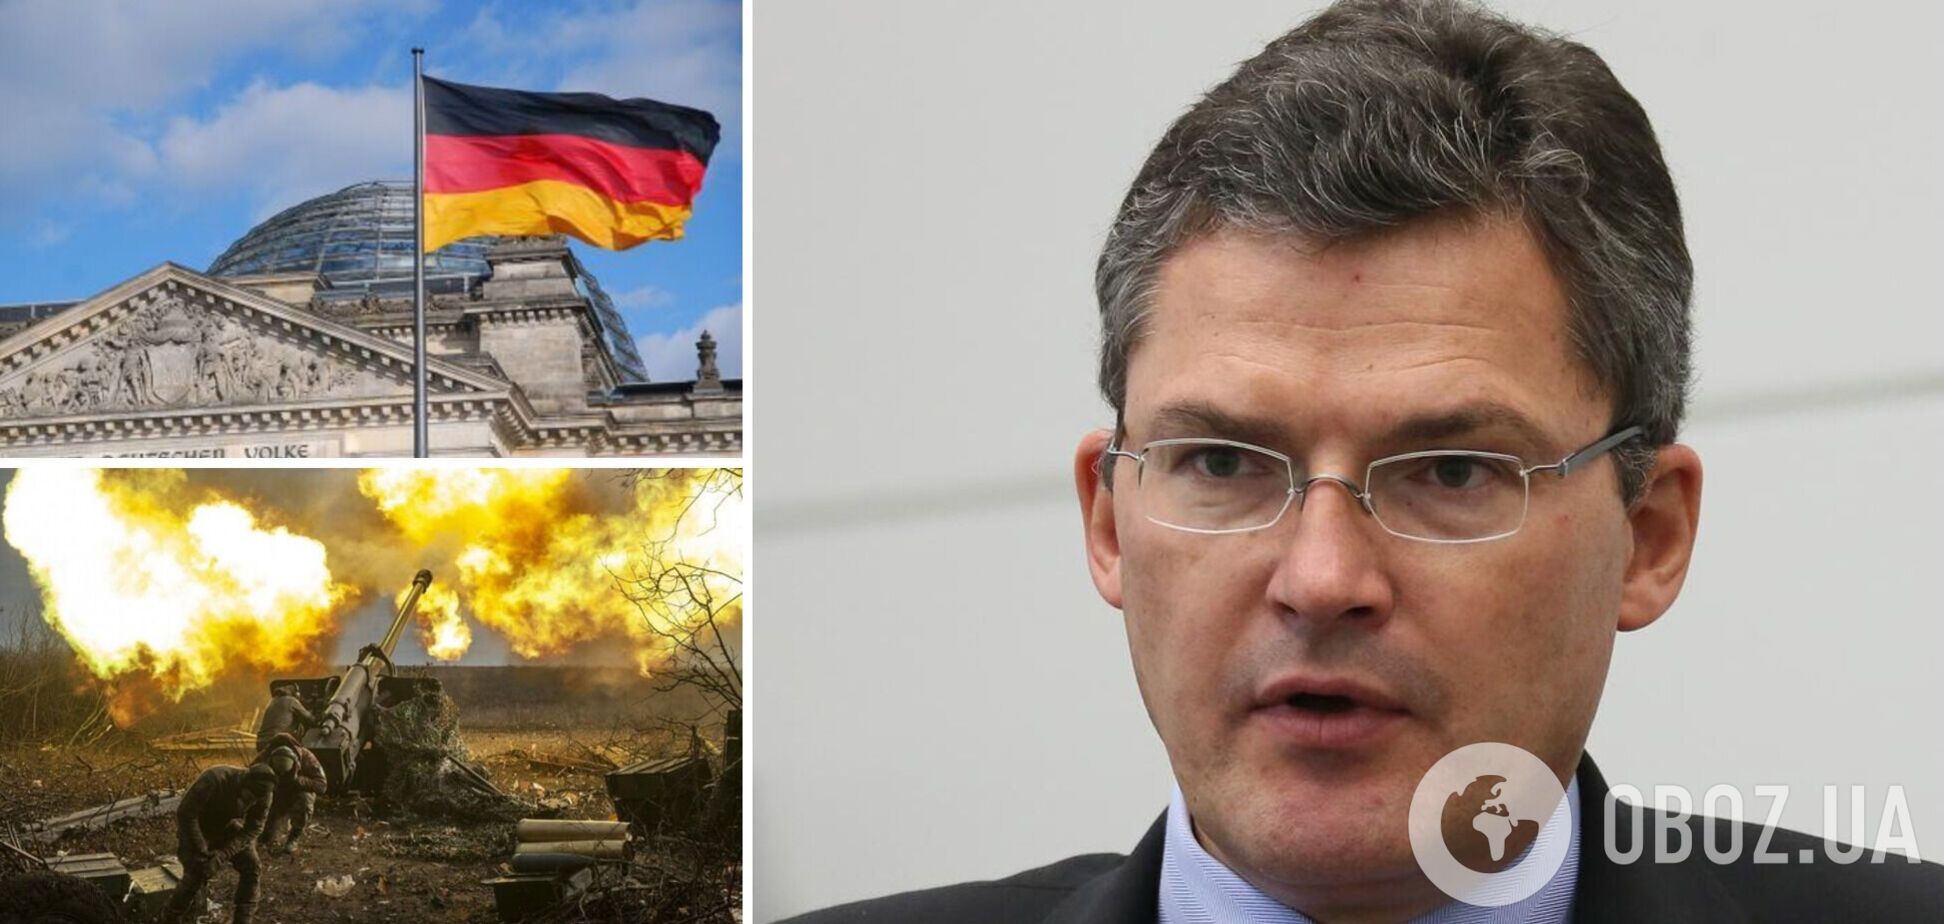 'Мы не находимся в окопах': депутат Бундестага отверг критику ВСУ за 'медленное' контрнаступление и призвал дать Украине больше оружия